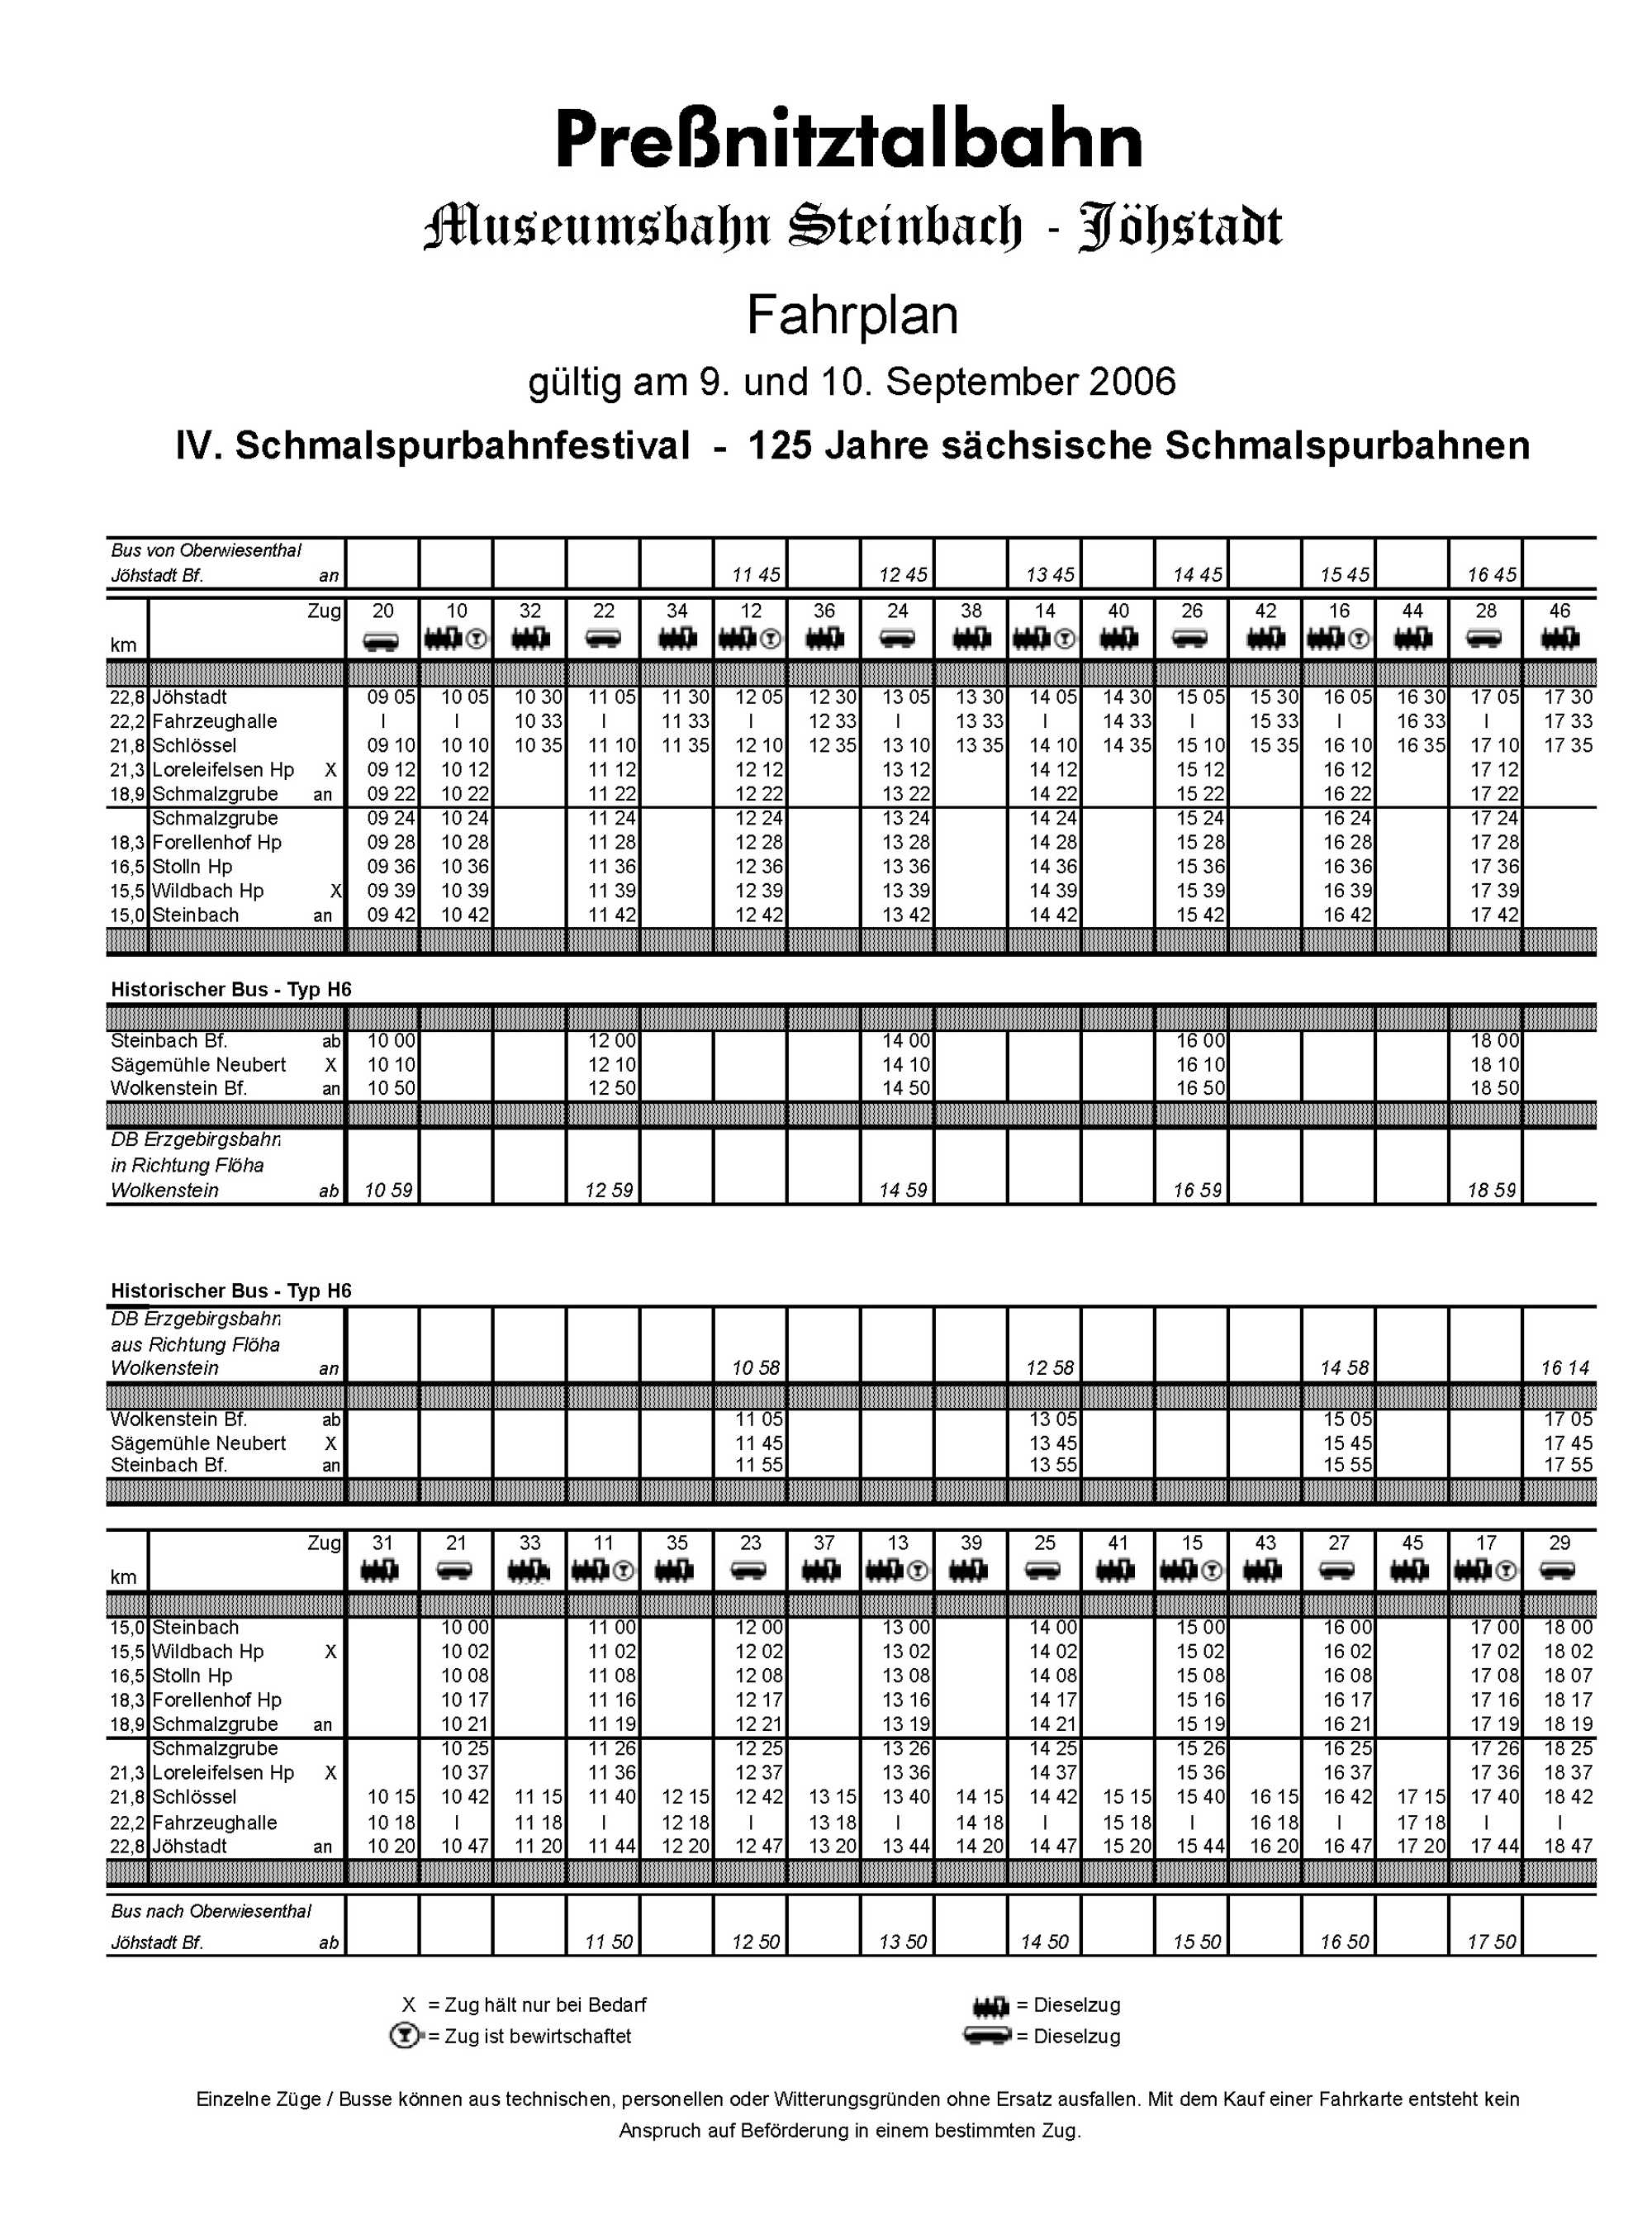 Fahrplan zum IV. Sächsischen Schmalspurbahnfestival 2006 bei der Preßnitztalbahn